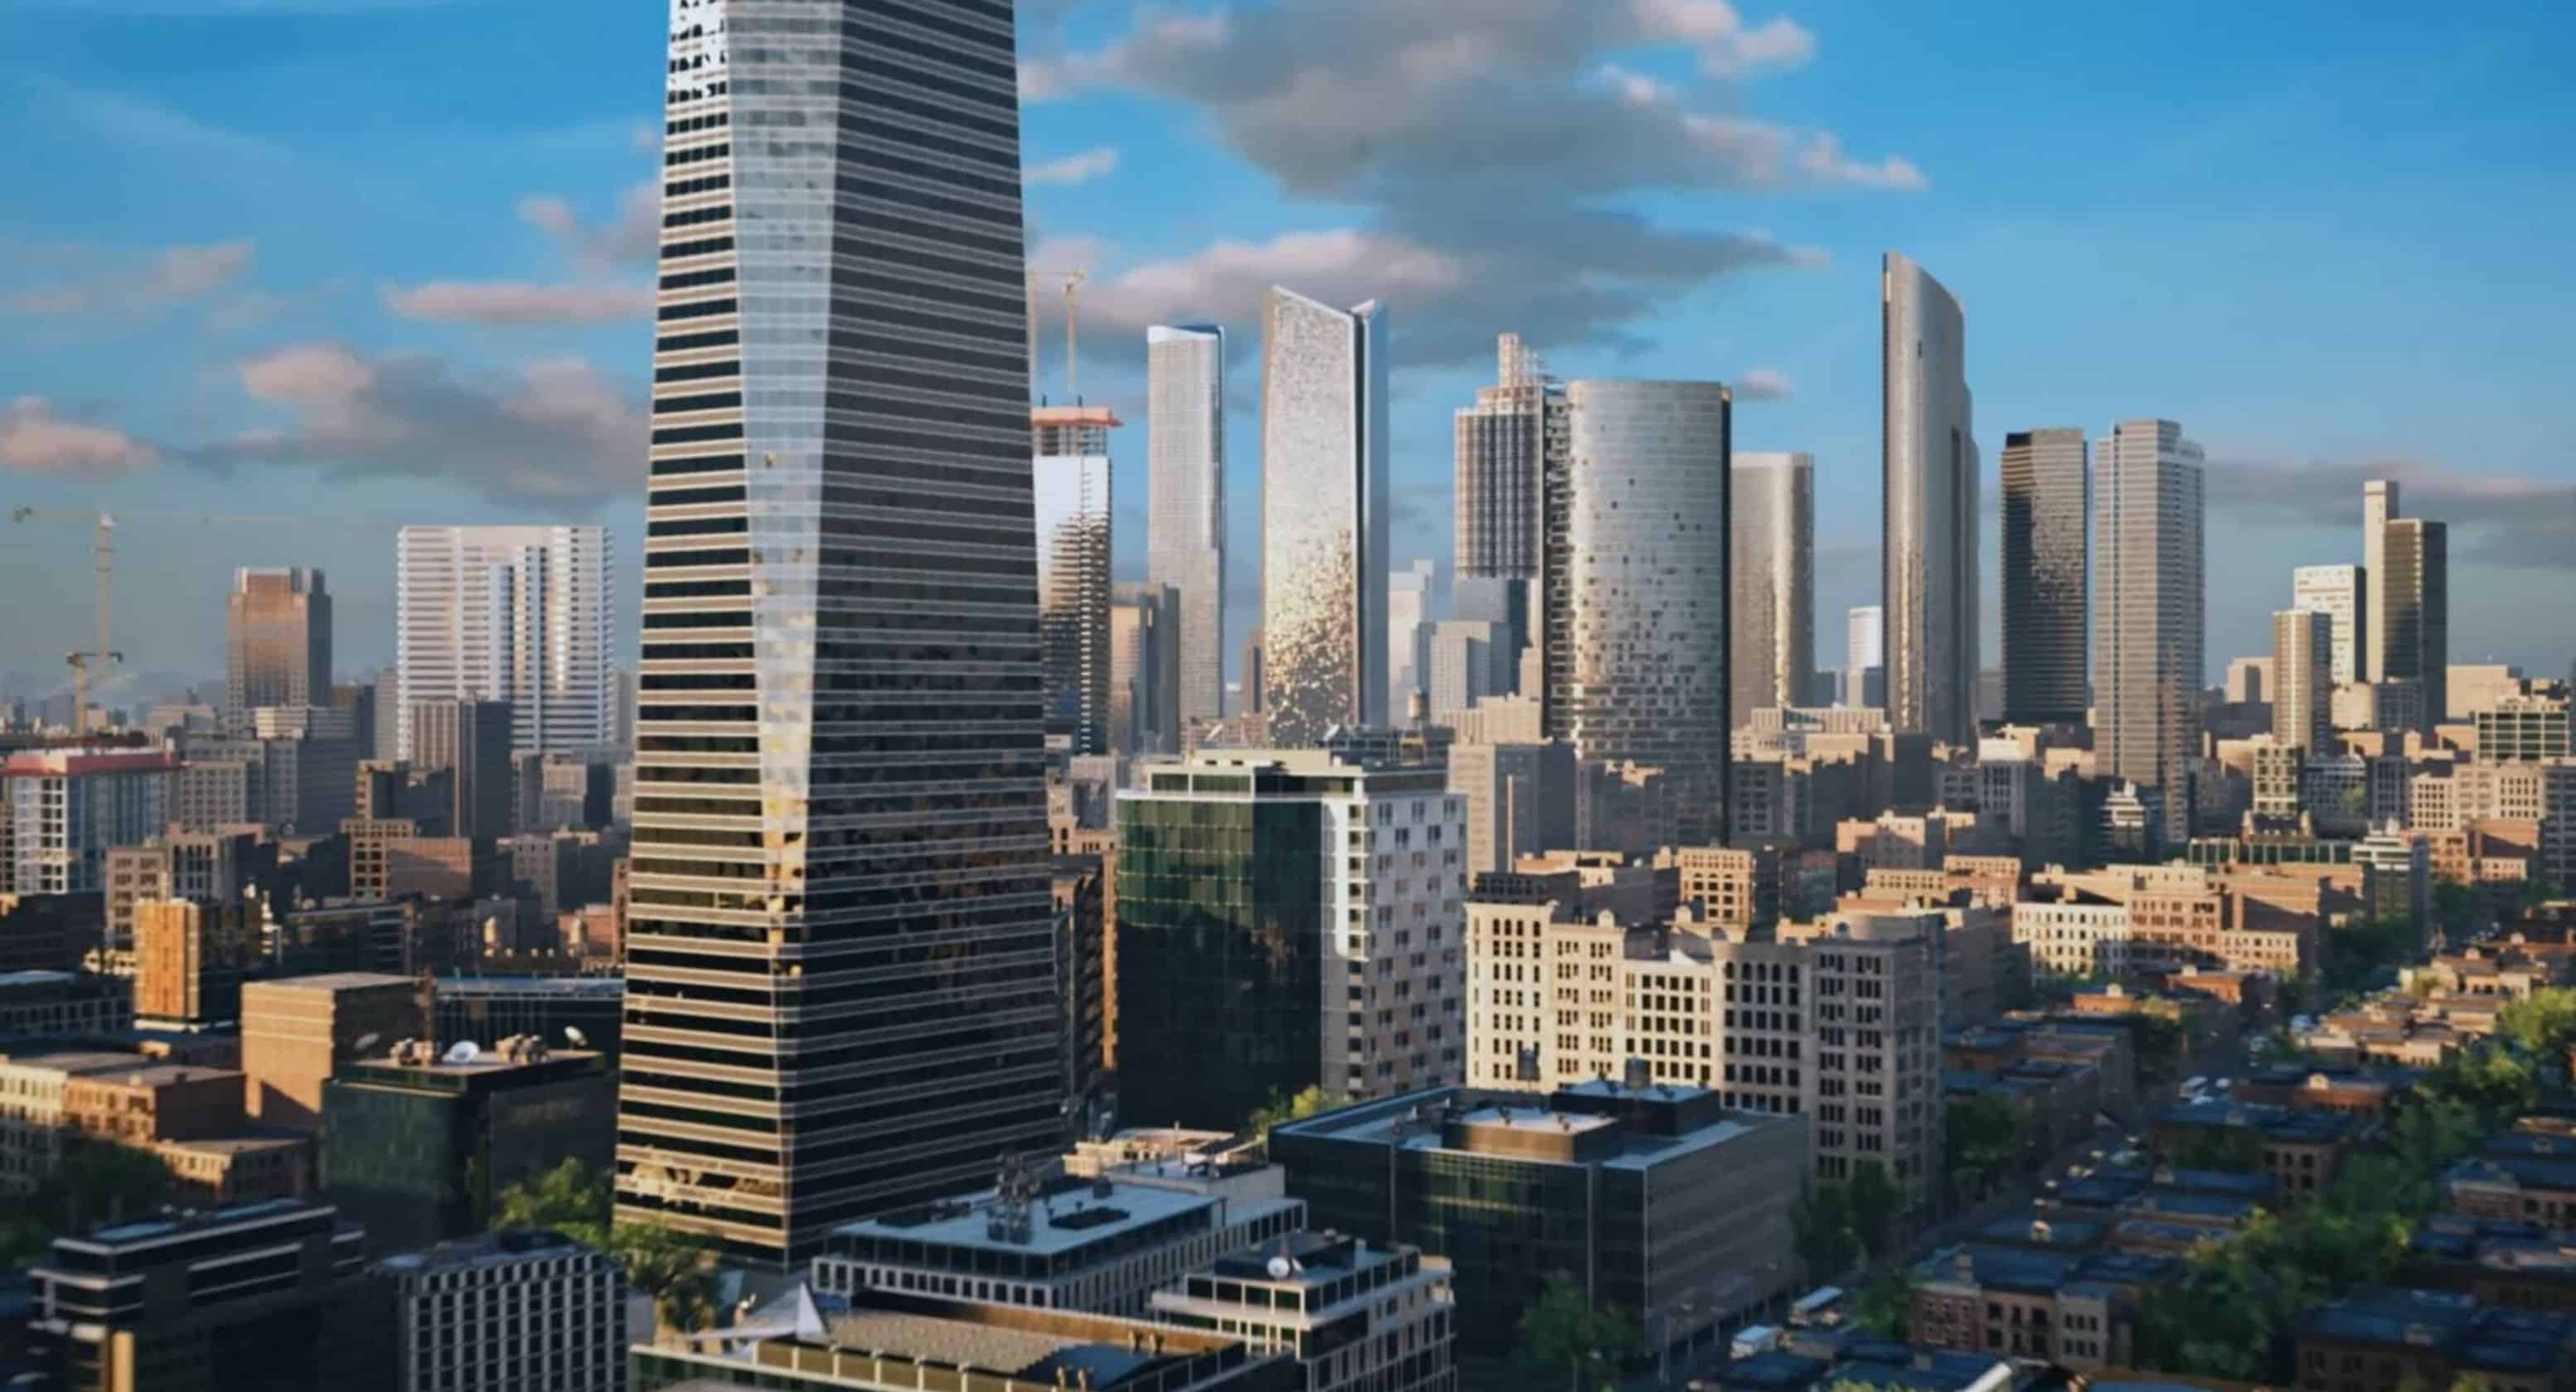 Los Santos recreated in Cities: Skylines is incredible